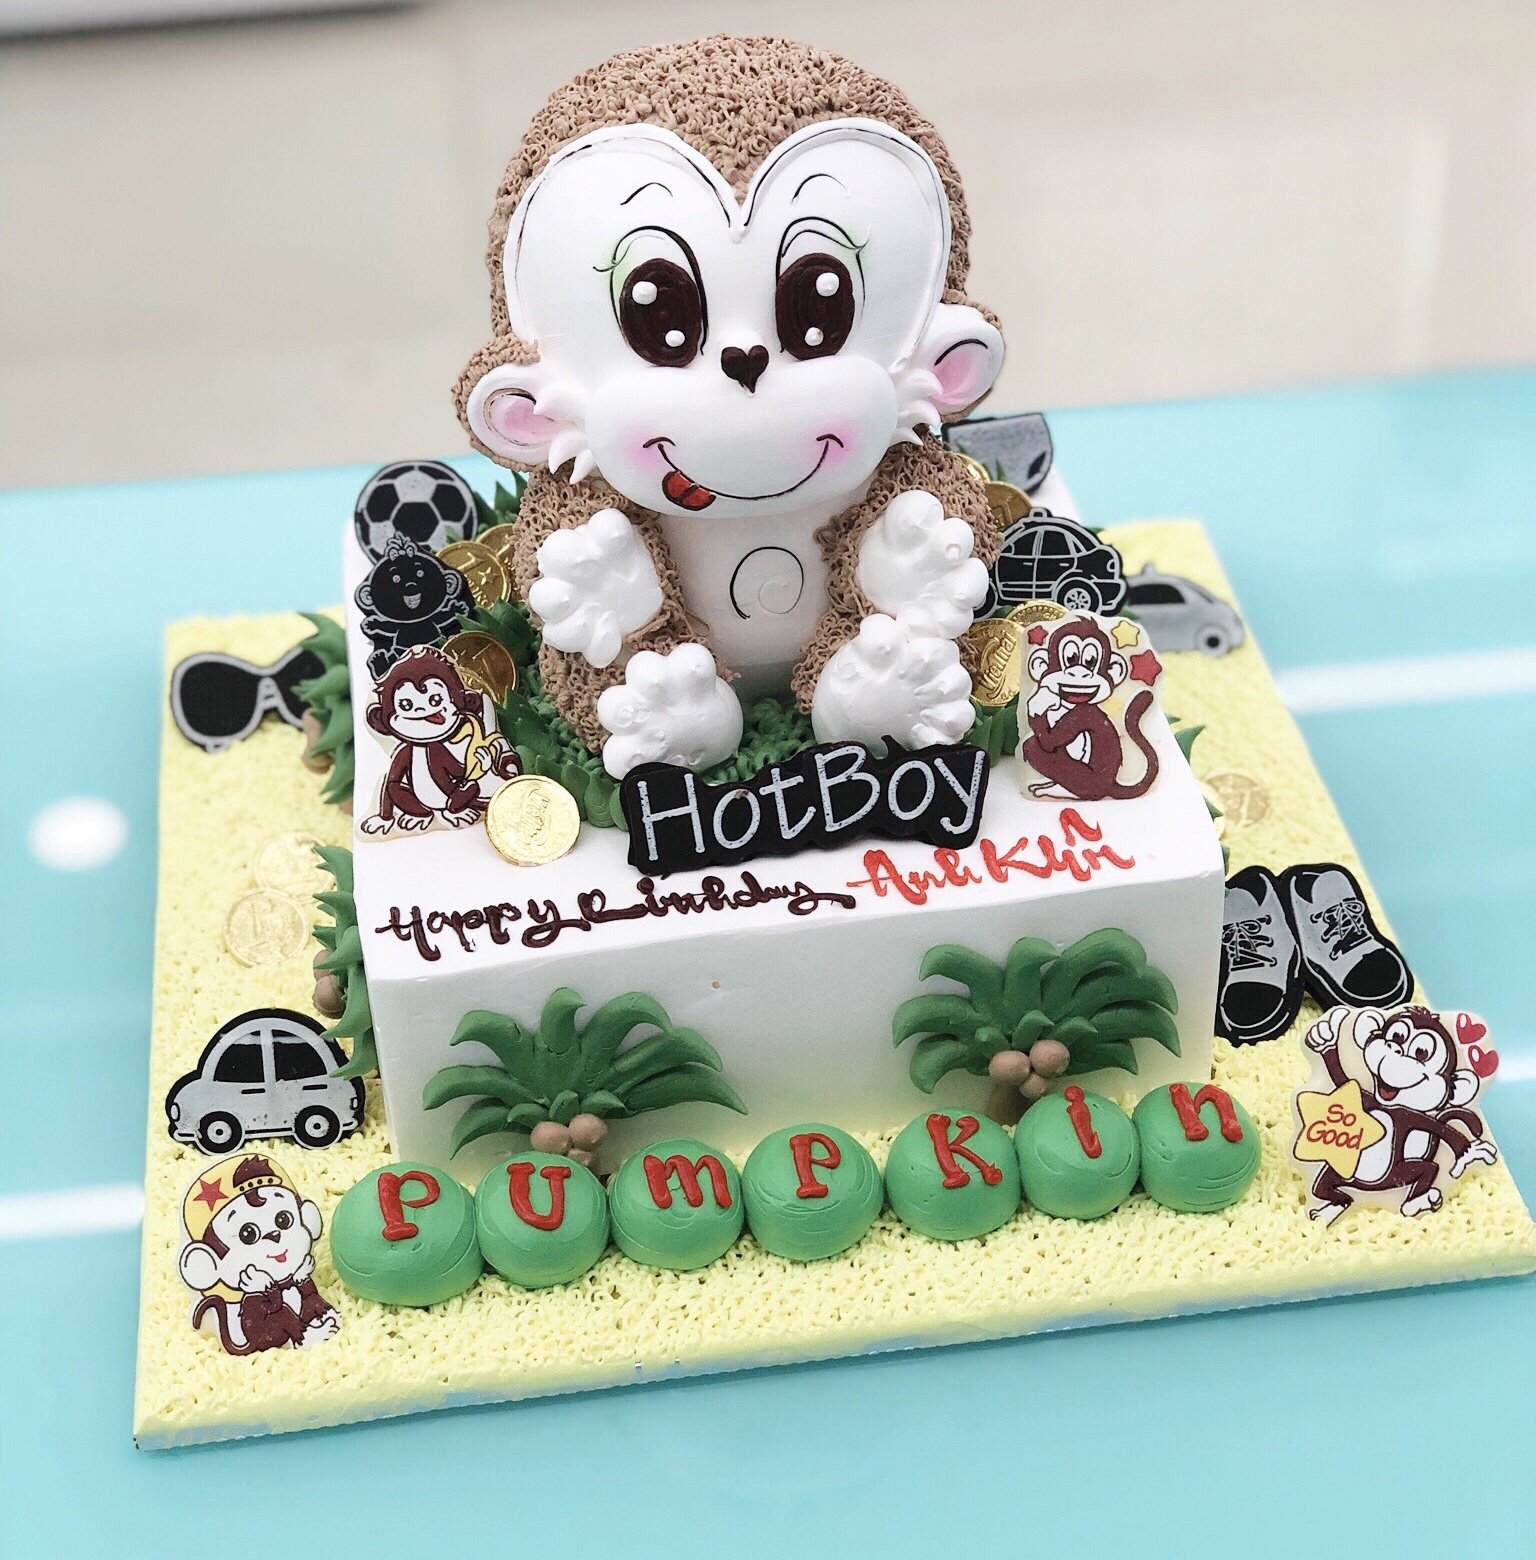 Con khỉ tuổi thân được in hoa văn trên chiếc bánh sinh nhật, mang đến một sự kết hợp tuyệt vời giữa nét cổ điển và hiện đại. Hãy xem hình ảnh để tận hưởng vẻ đẹp tinh tế của bánh và cảm nhận sự may mắn của con bạn!